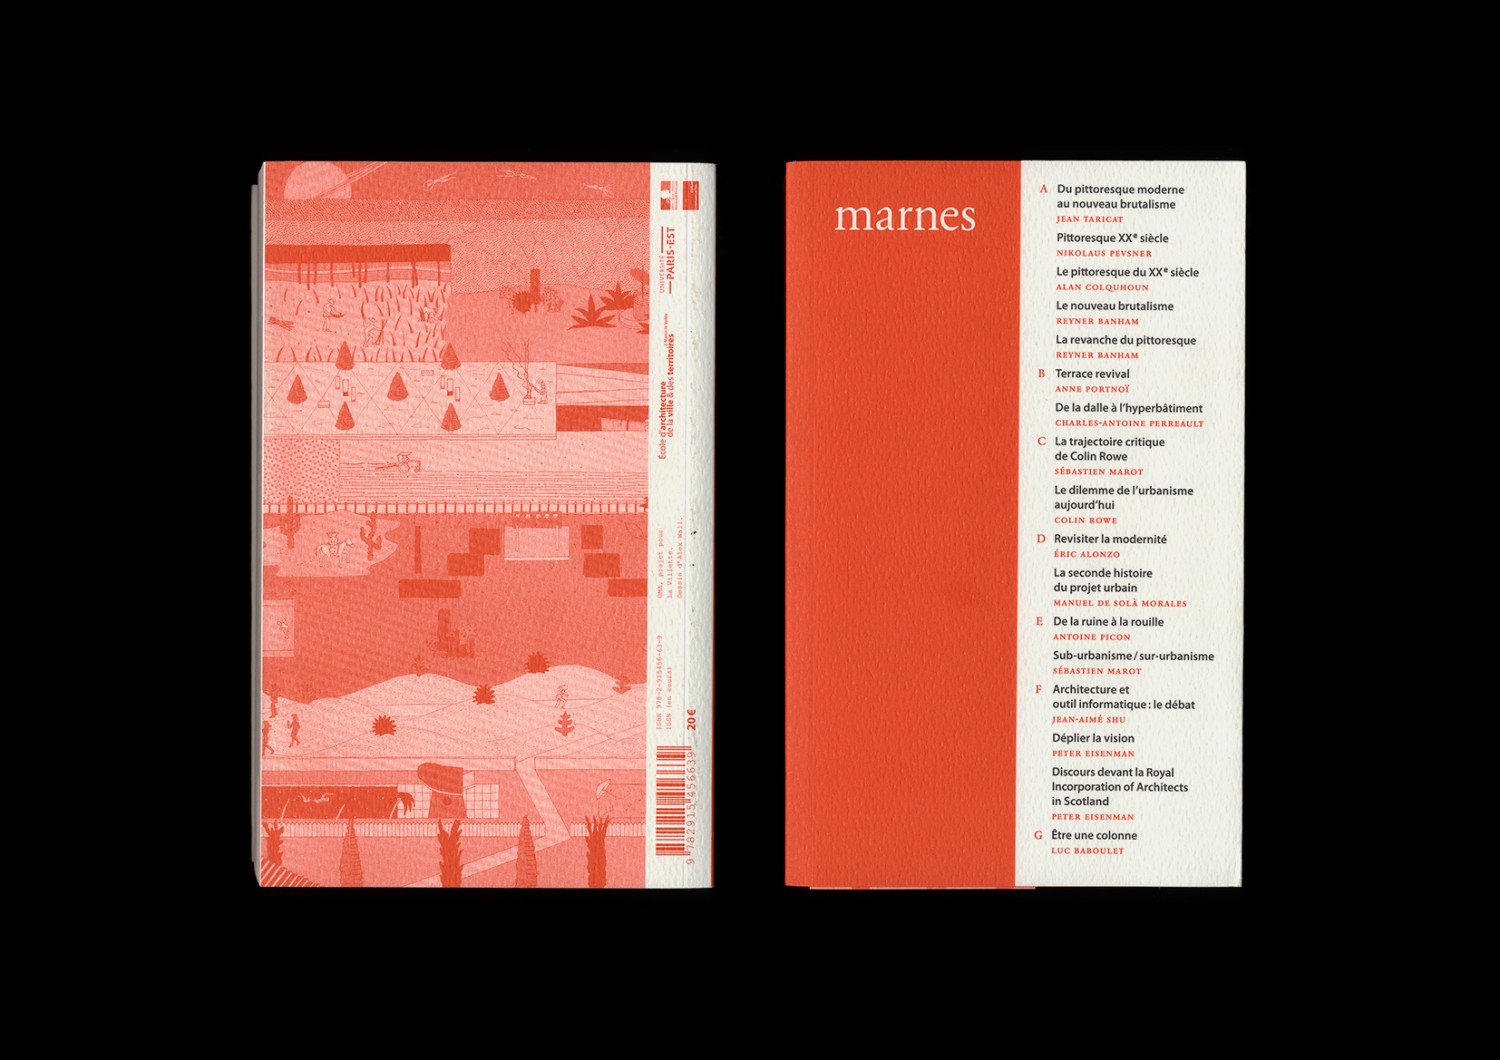 <p>Marnes, documents d’architecture, vol. 1<br />
Photo © Building Paris</p>